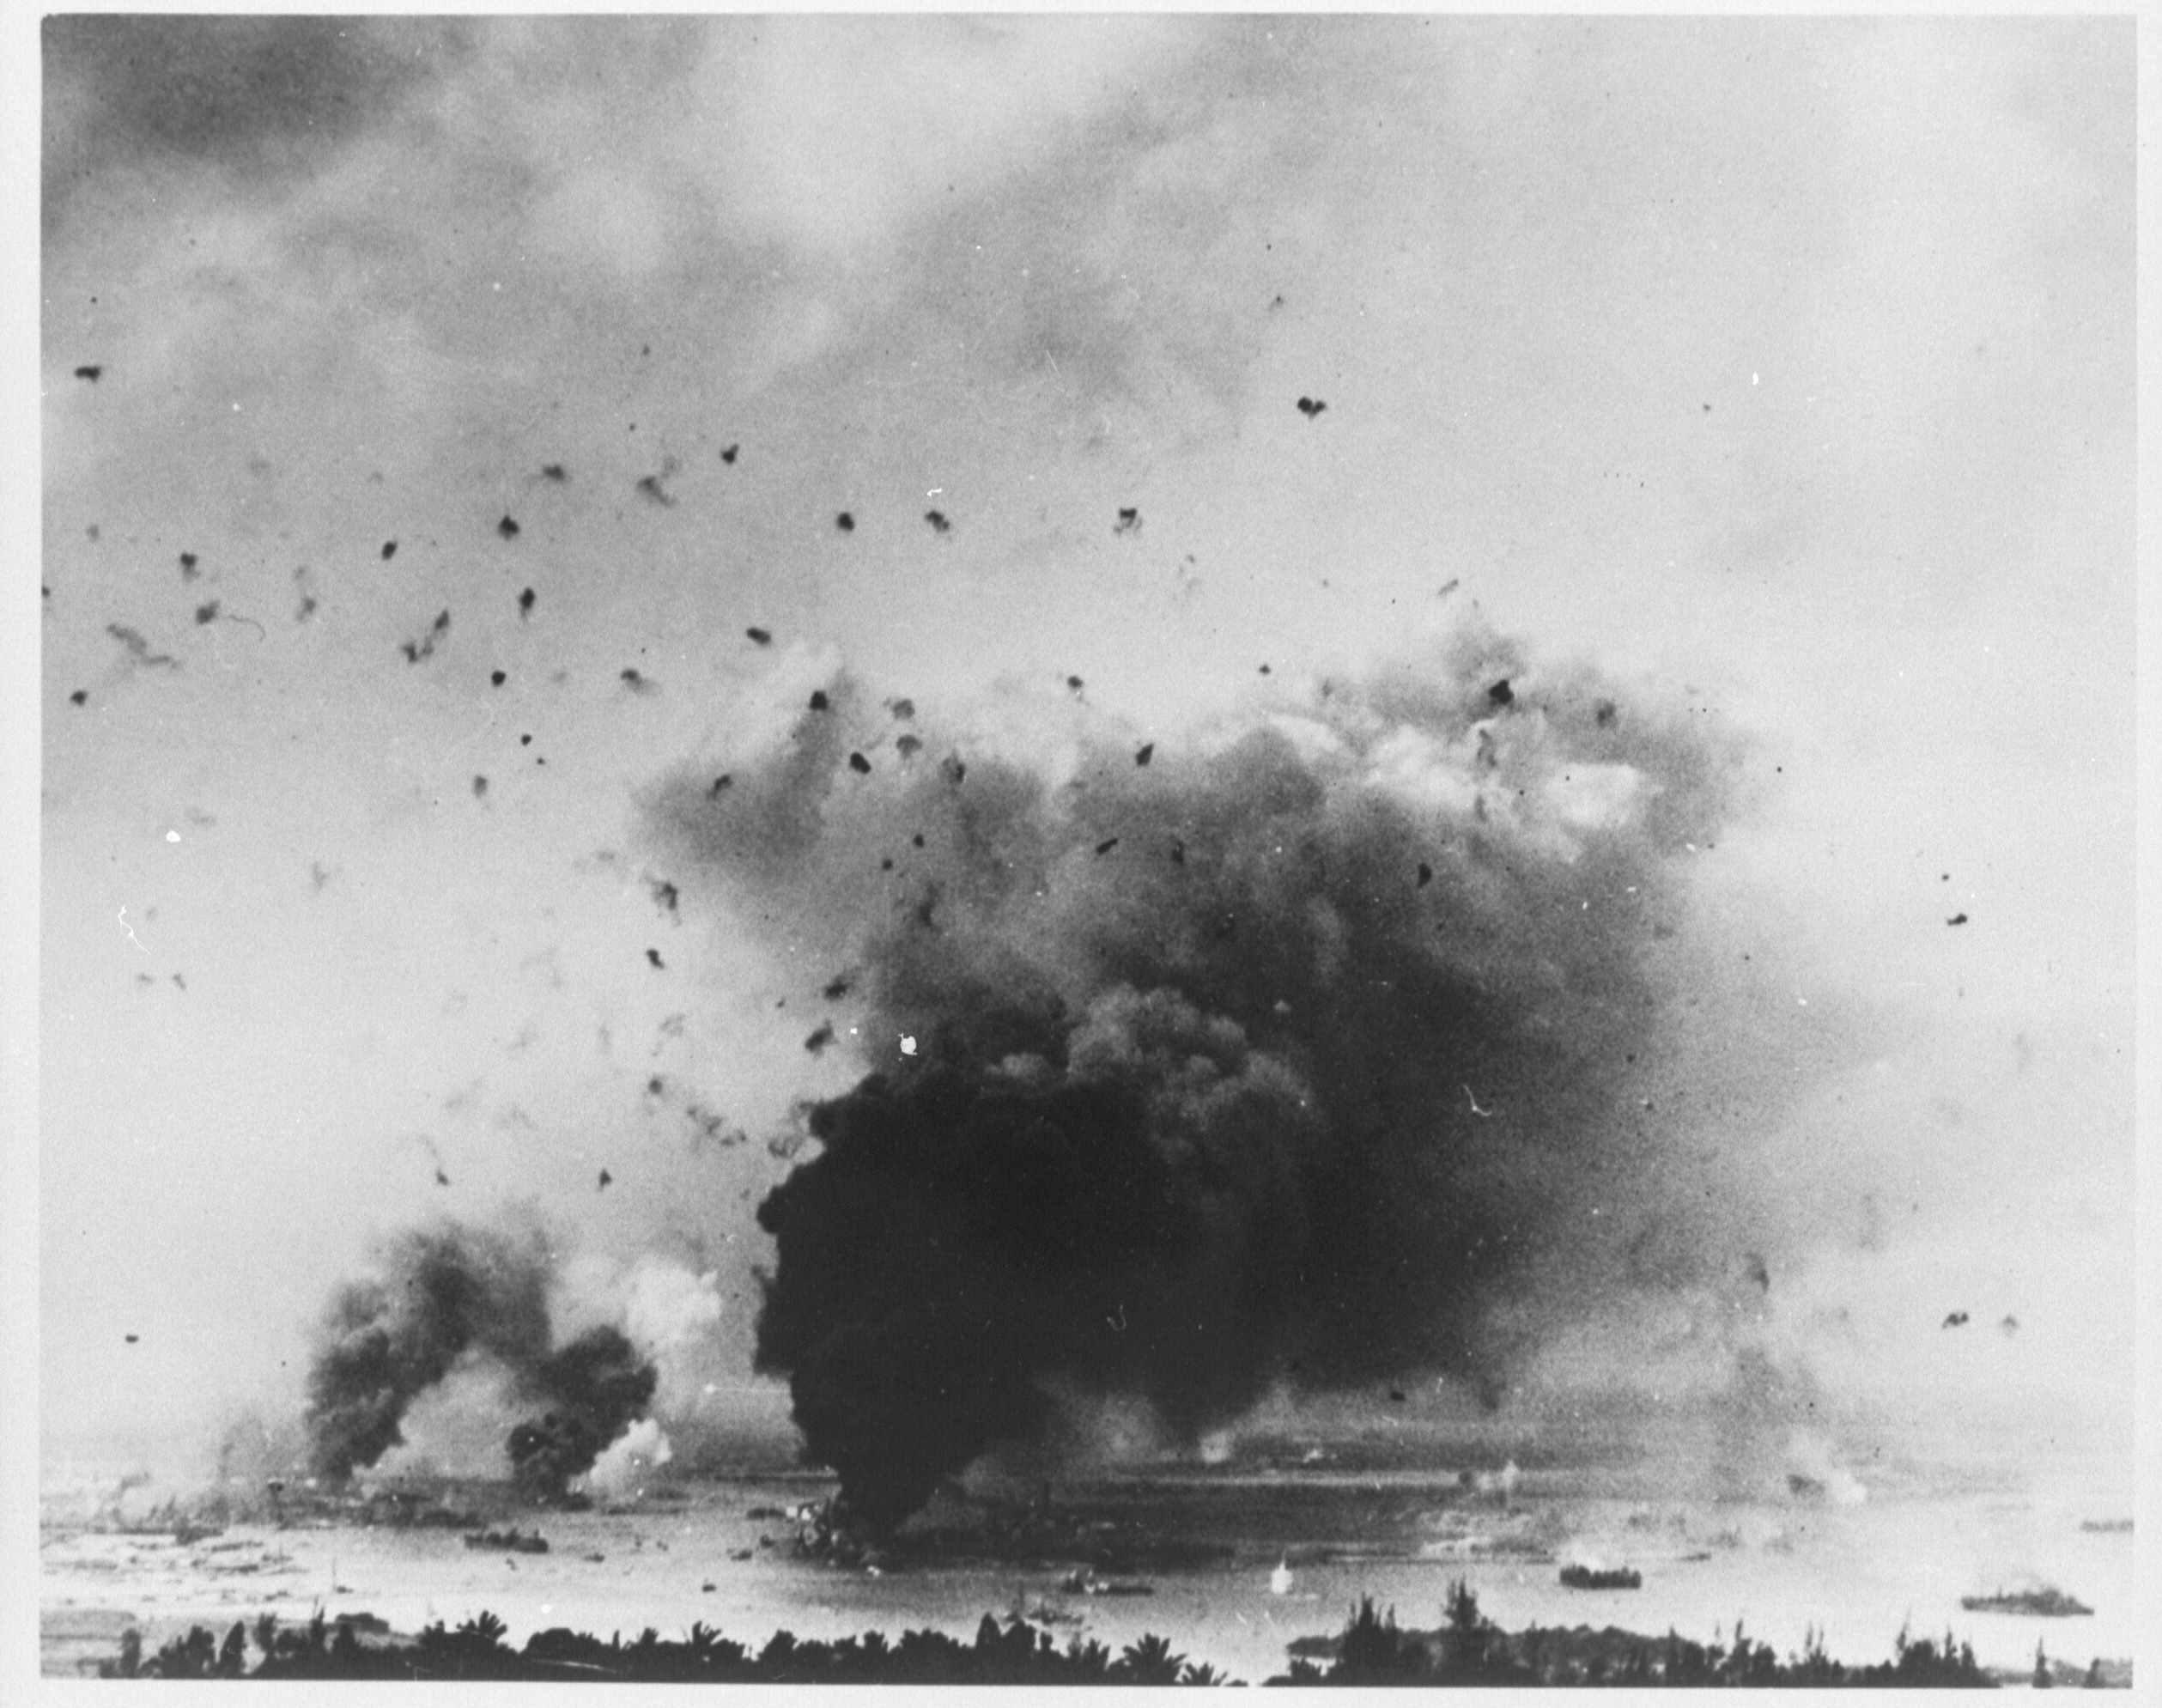 Japanse aanval op Pearl Harbor op 7 december 1941